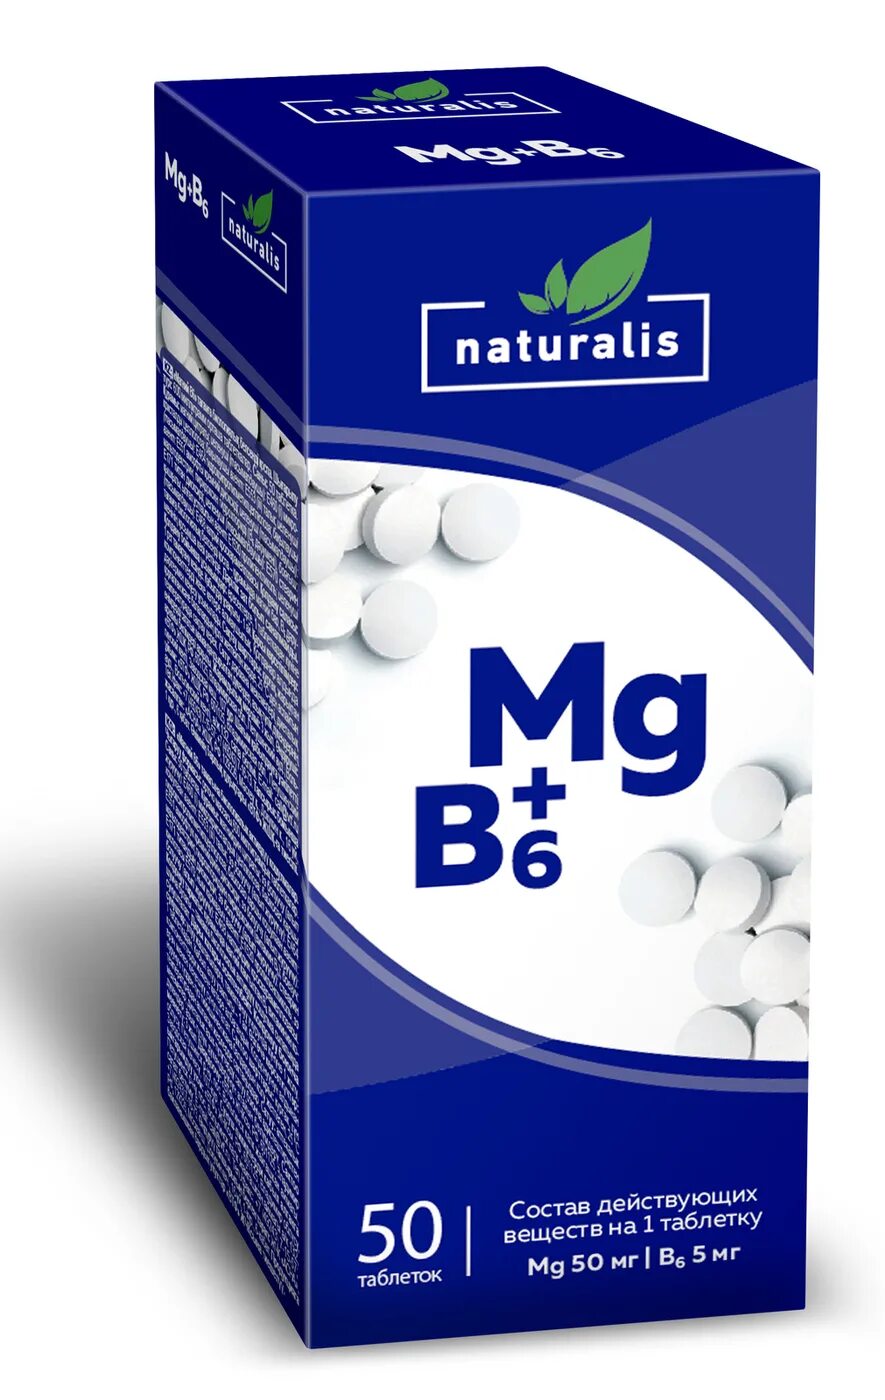 Магний б6 мг. Биологически активная добавка магний в6 таблетки. Магний б6 Натуралис. БАД MG b6. Магний в6 n50 табл.